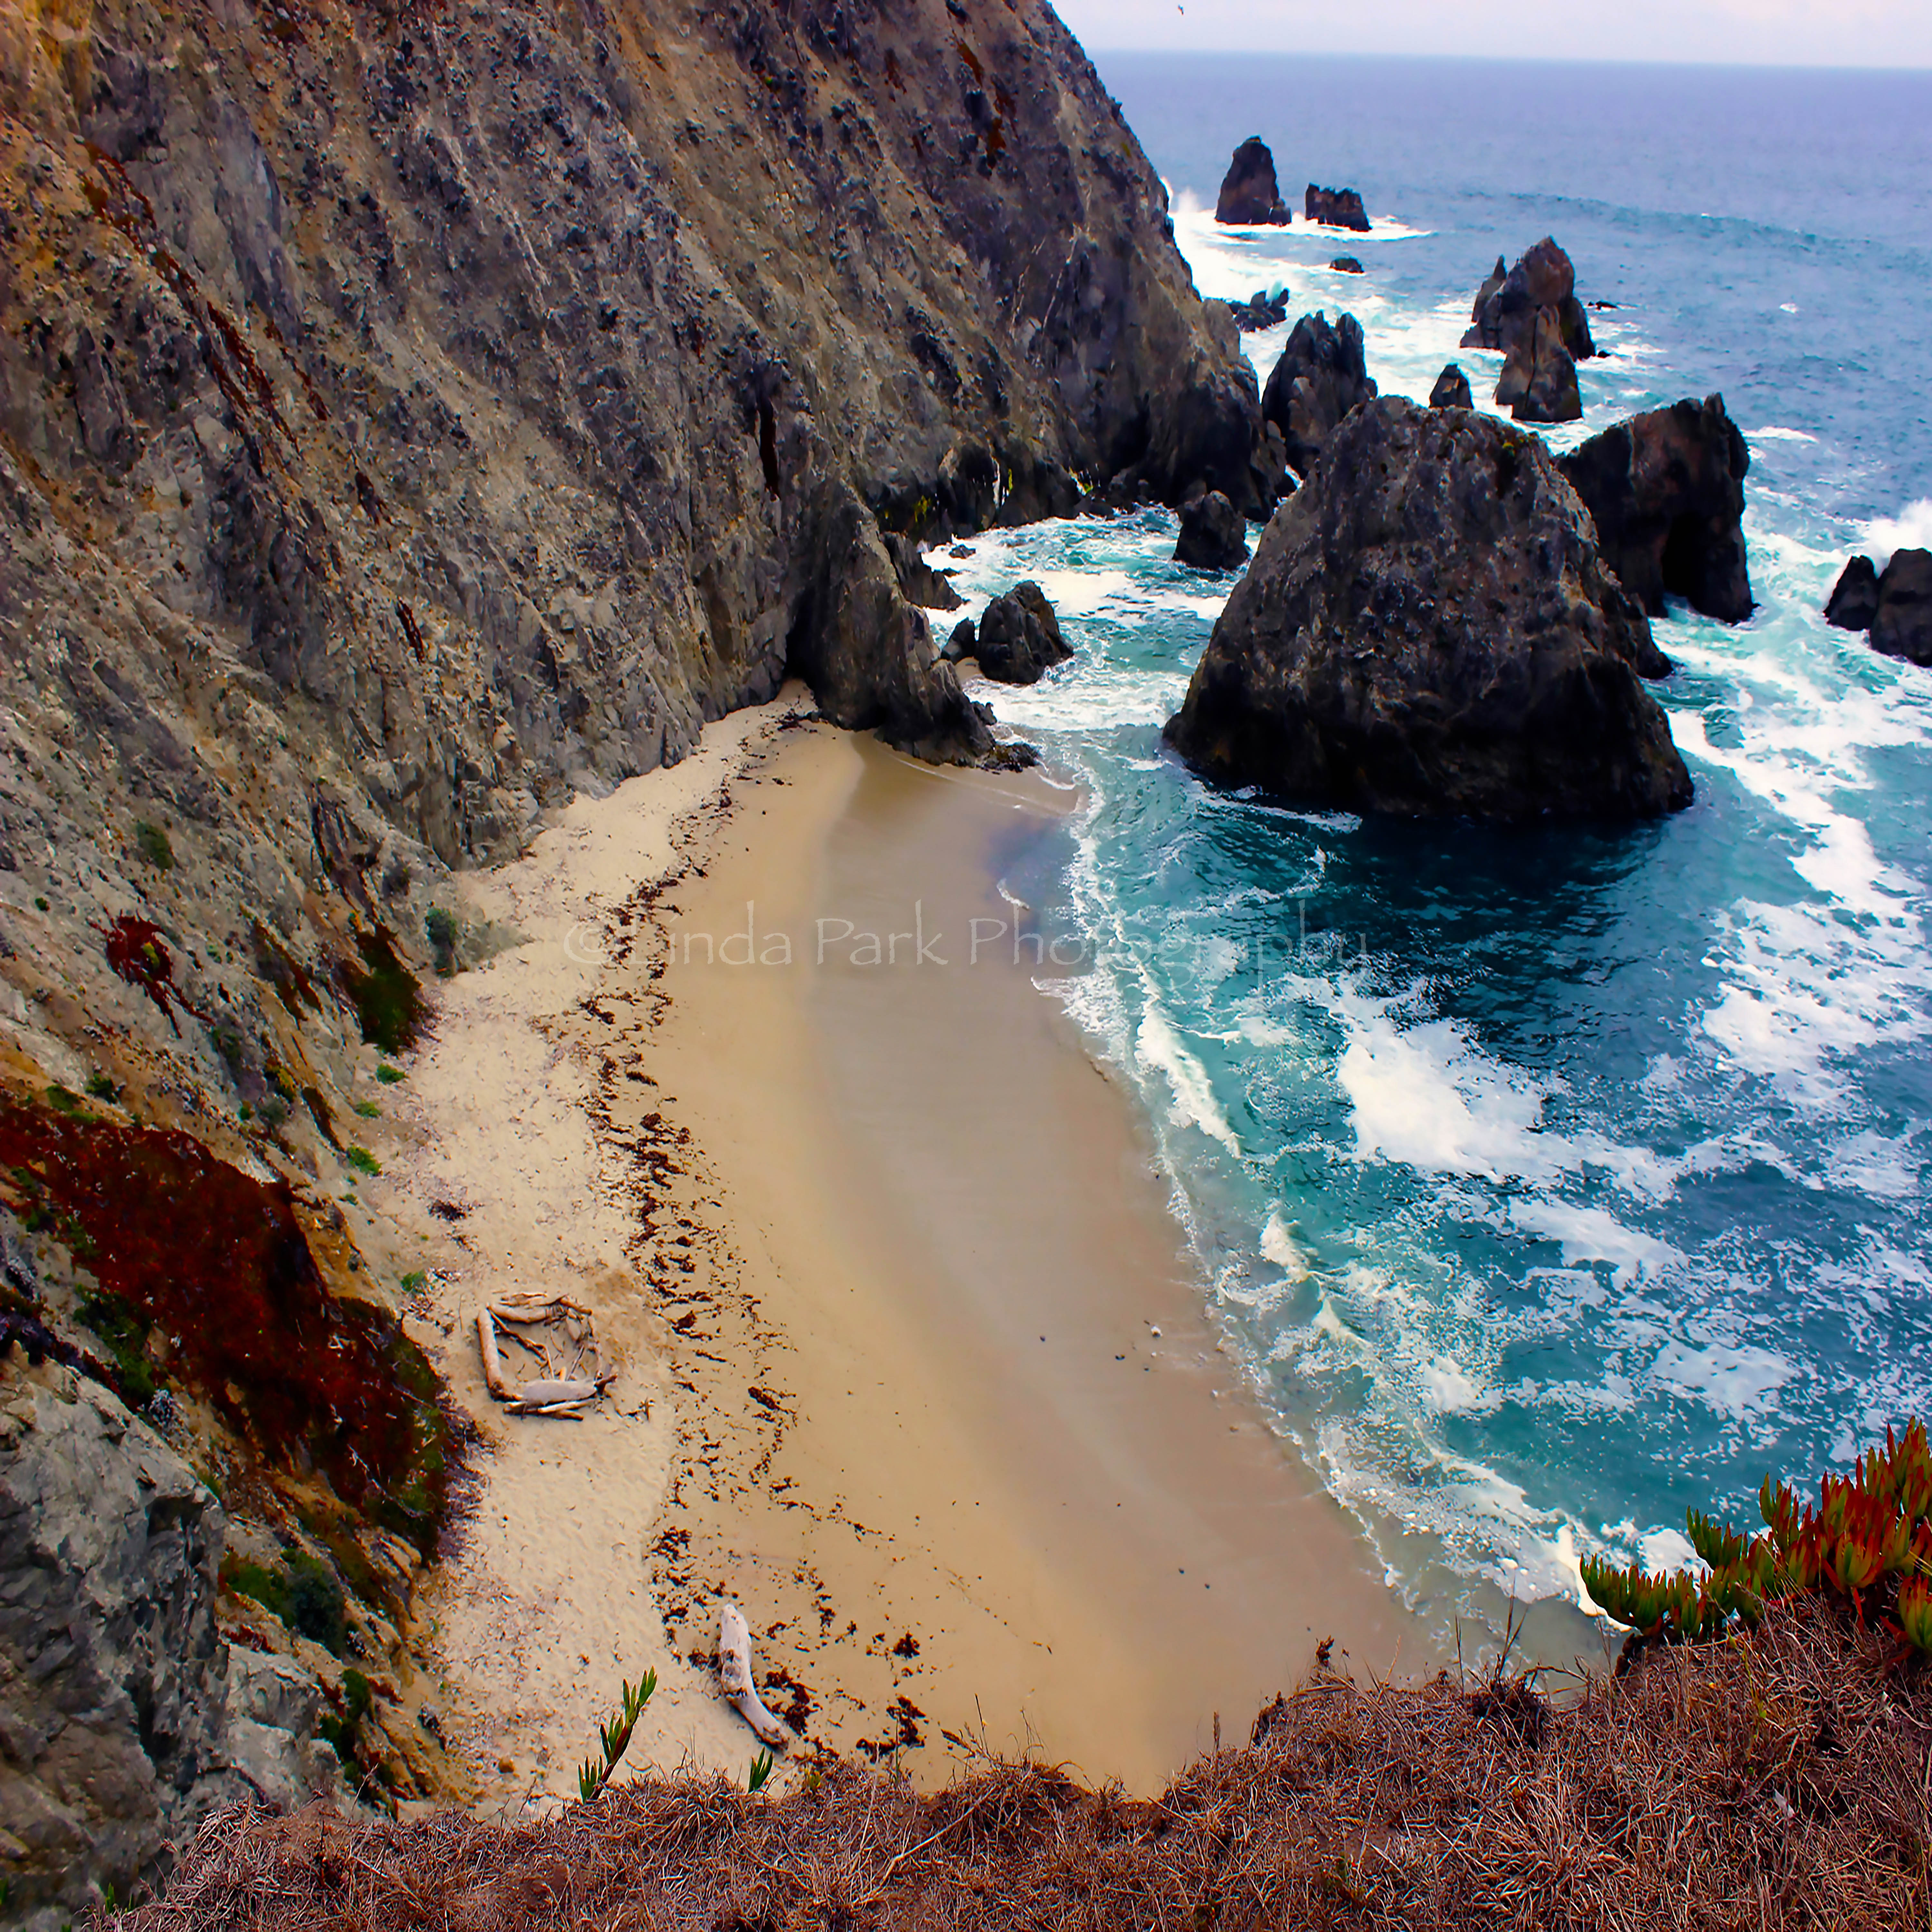 Bodega Bay, California Photography - Beach Decor - Linda Park ...